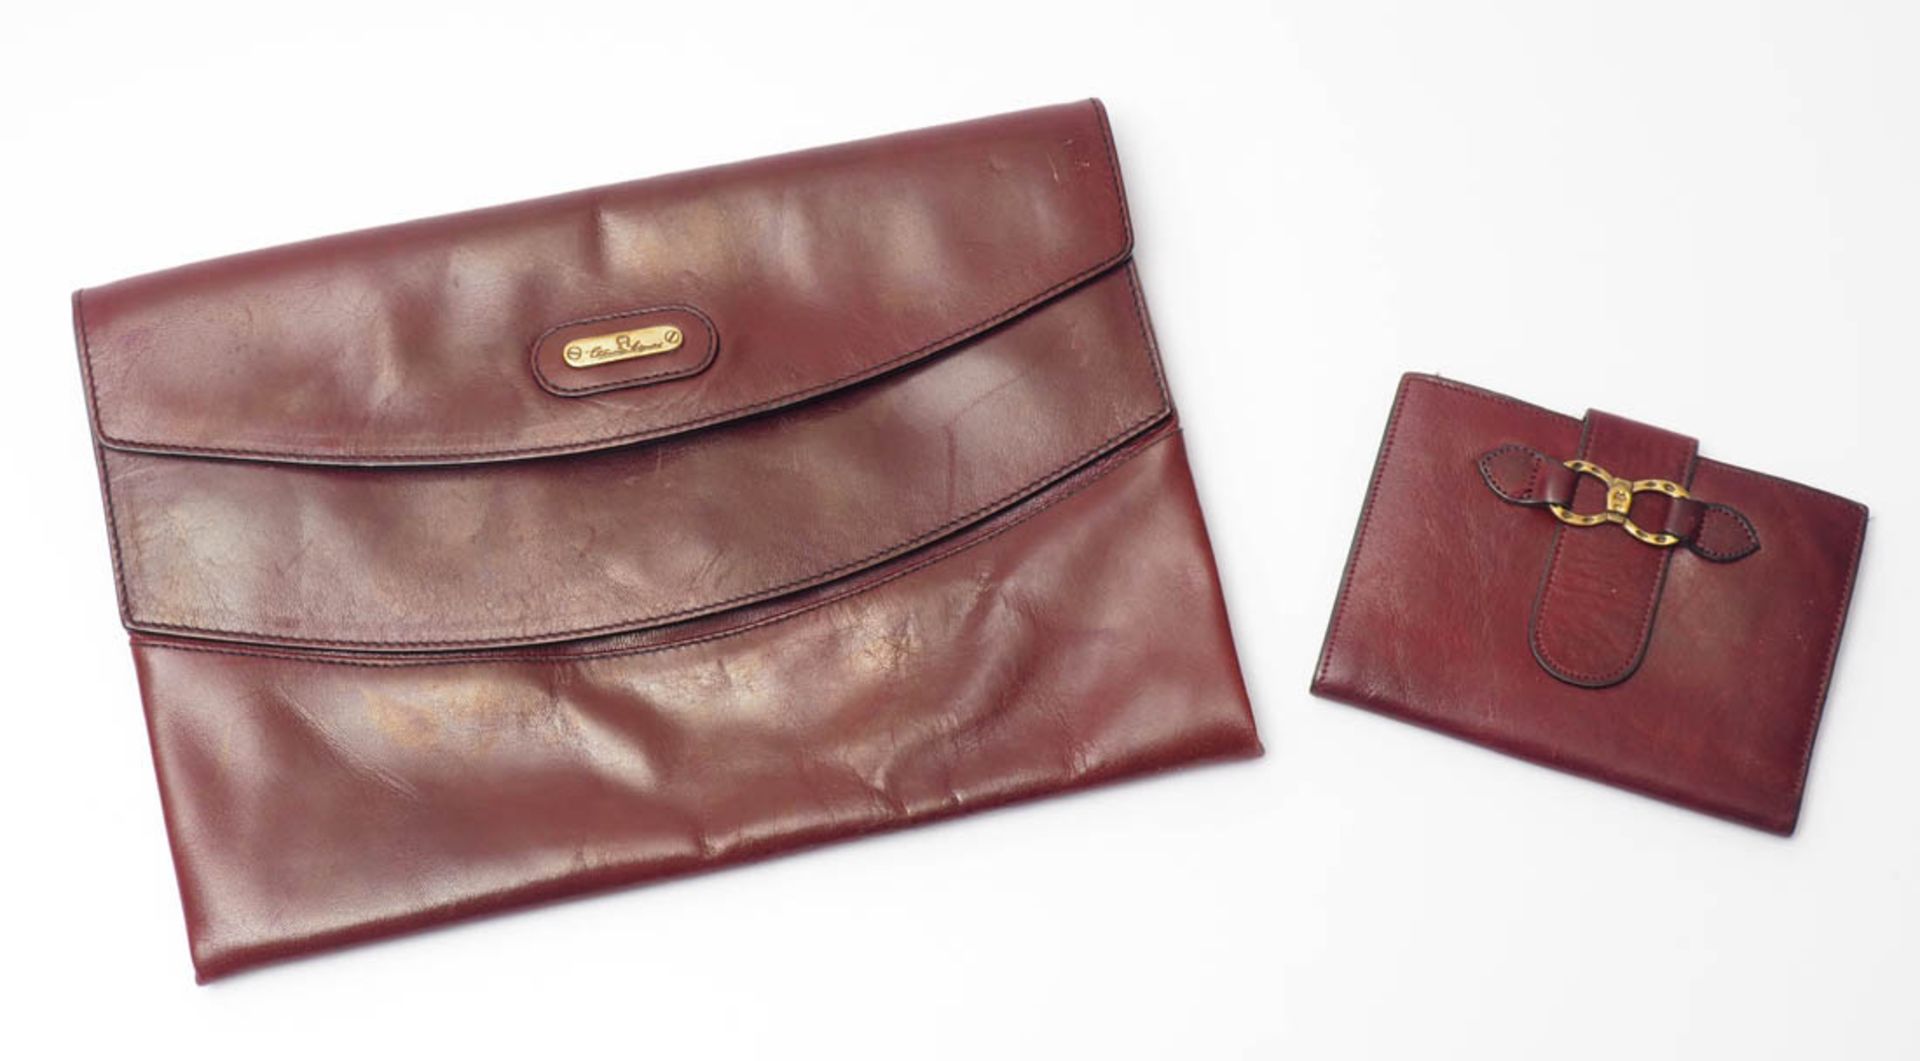 Damenhandtasche (Clutch), Aigner Bordeauxrotes Leder. 17,5x26cm. Dazu ein Geldbeutel, Aigner.